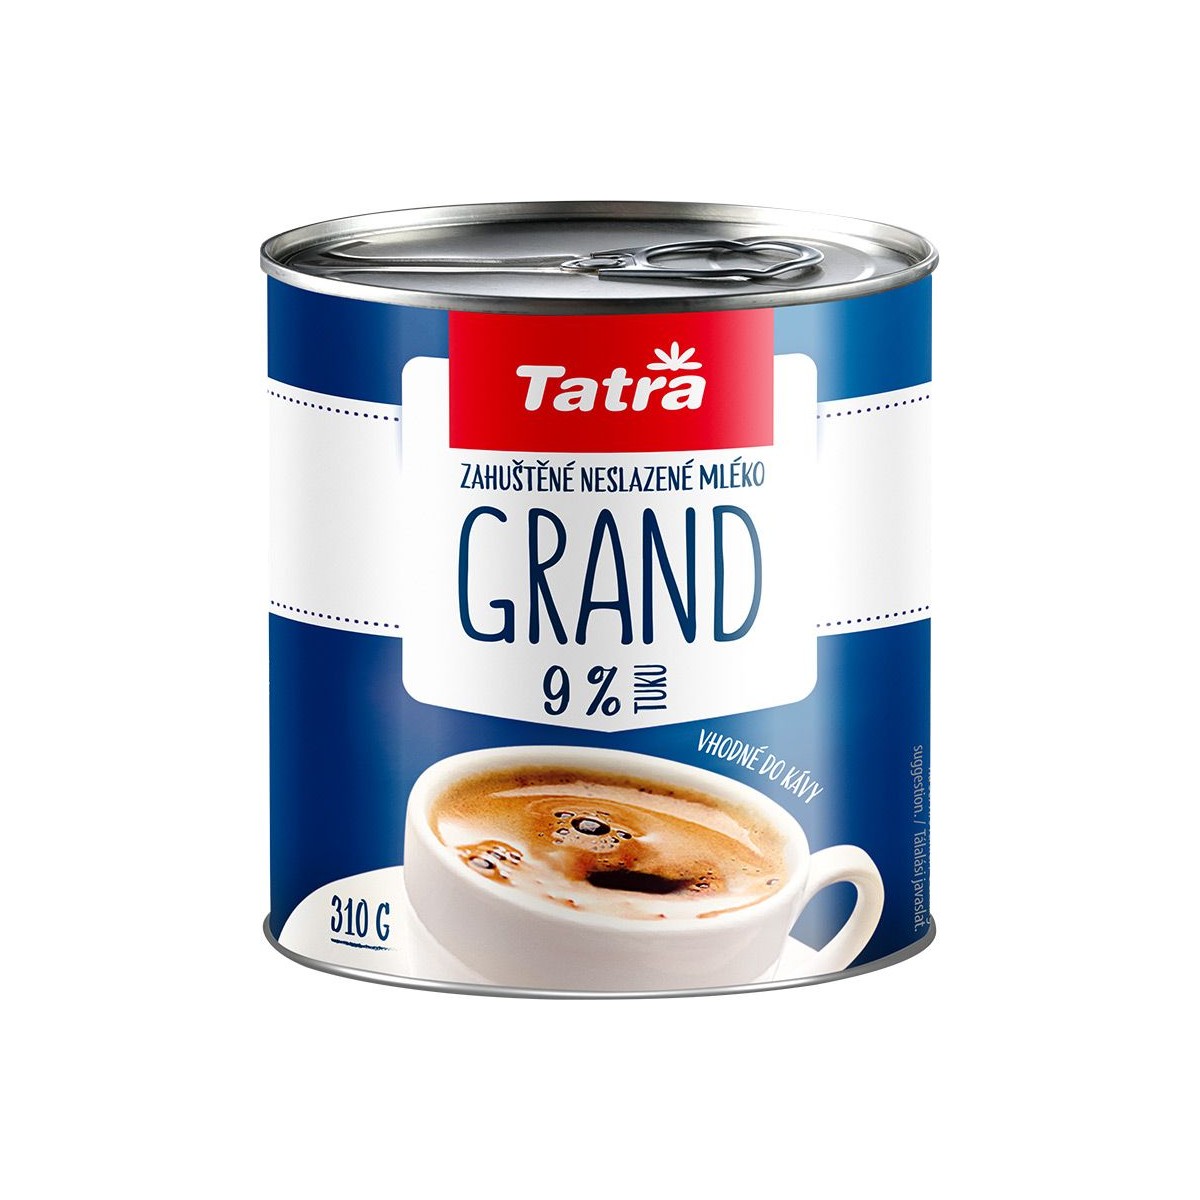 Tatra Grand zahuštěné mléko neslazené 9% 310g - plech